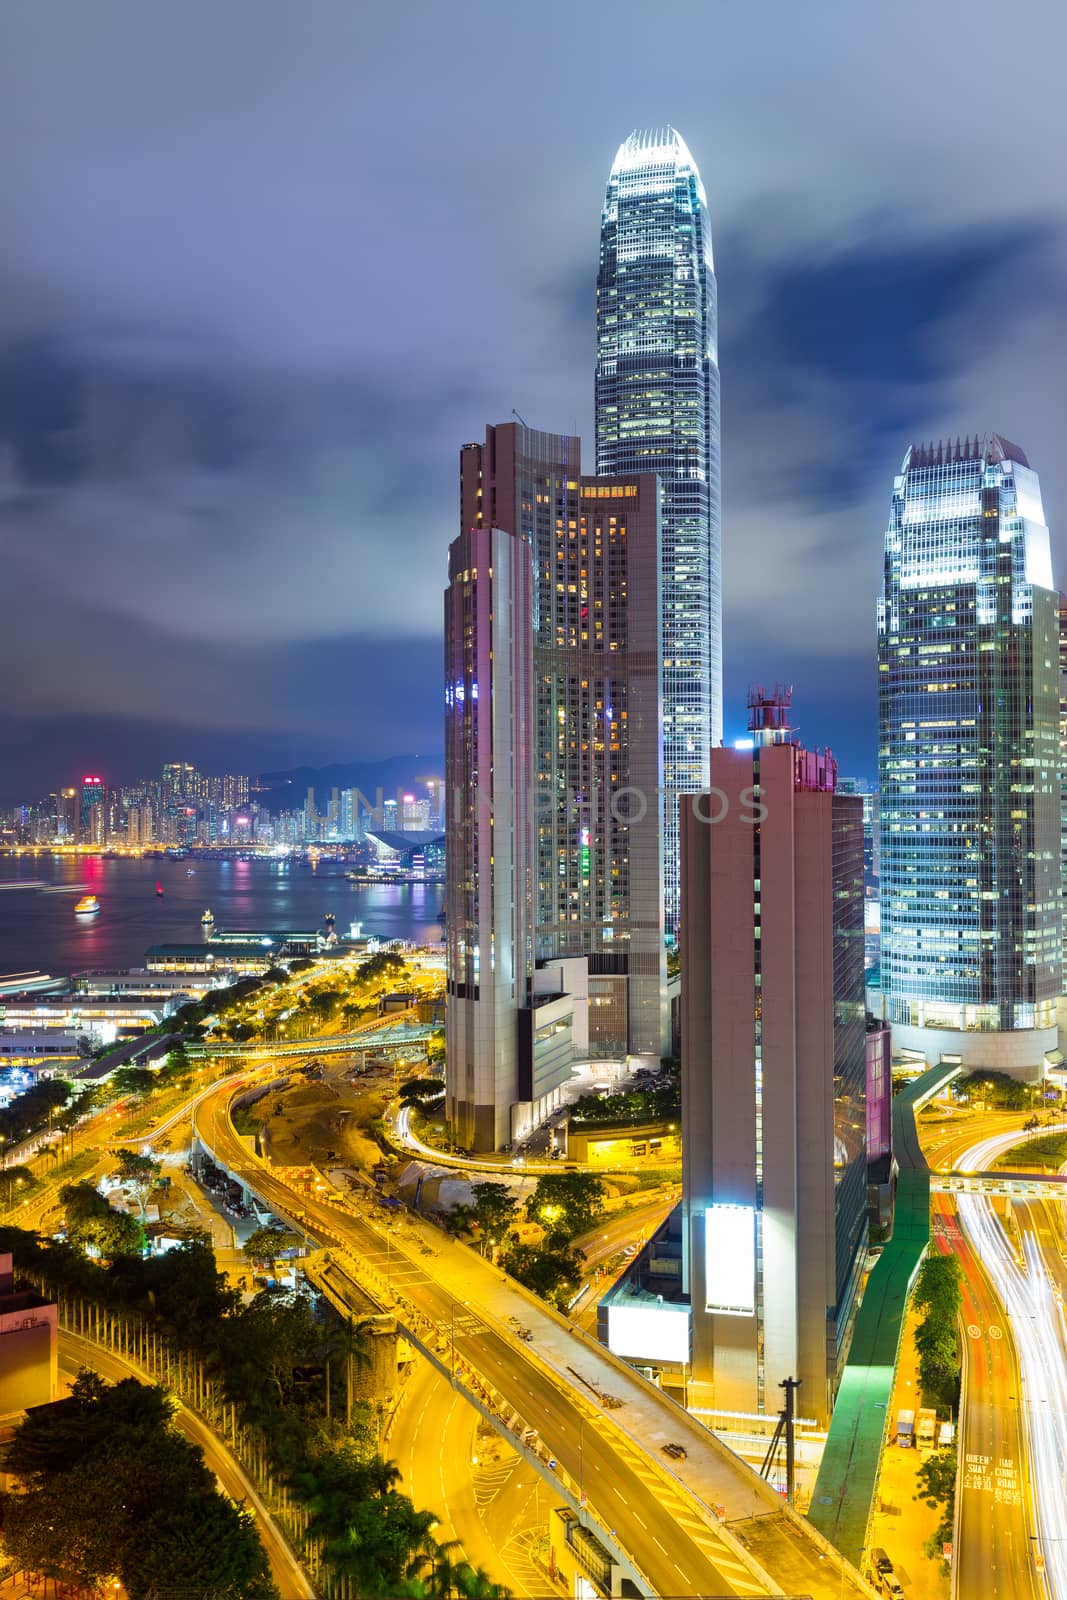 Financial district in Hong Kong at night